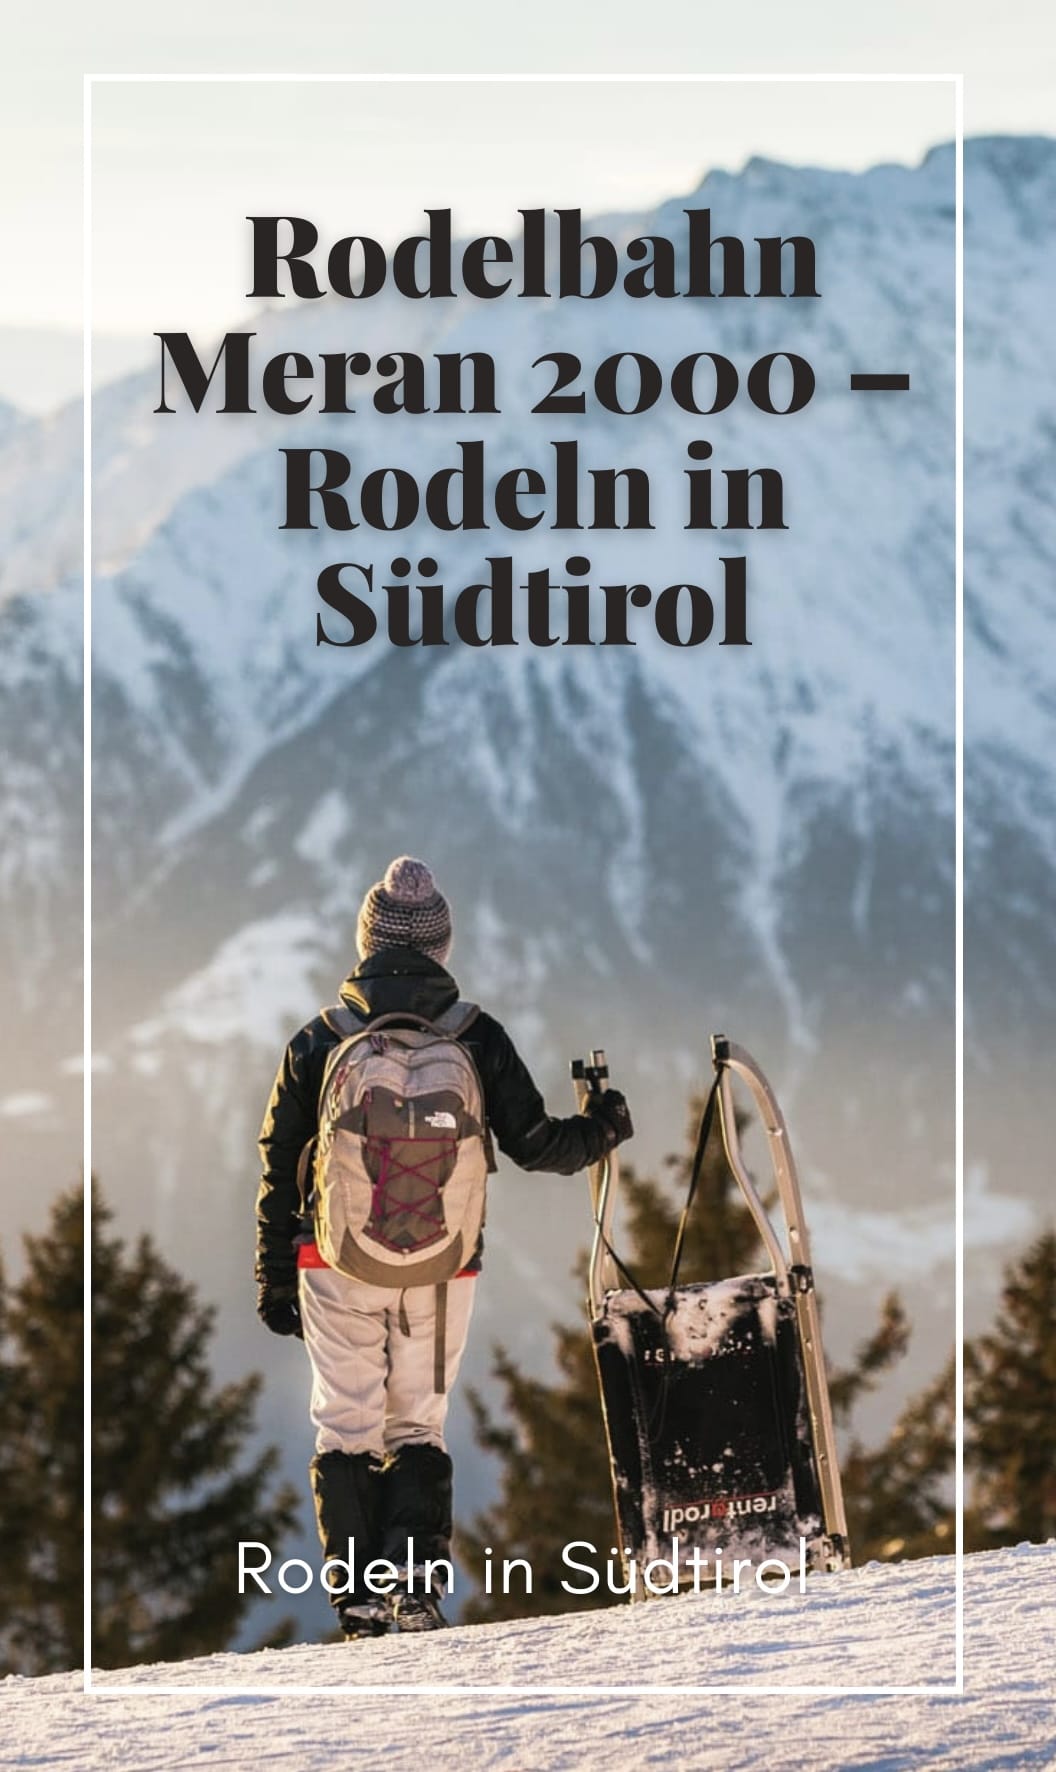 Rodelbahn Meran 2000 – Rodeln in Südtirol